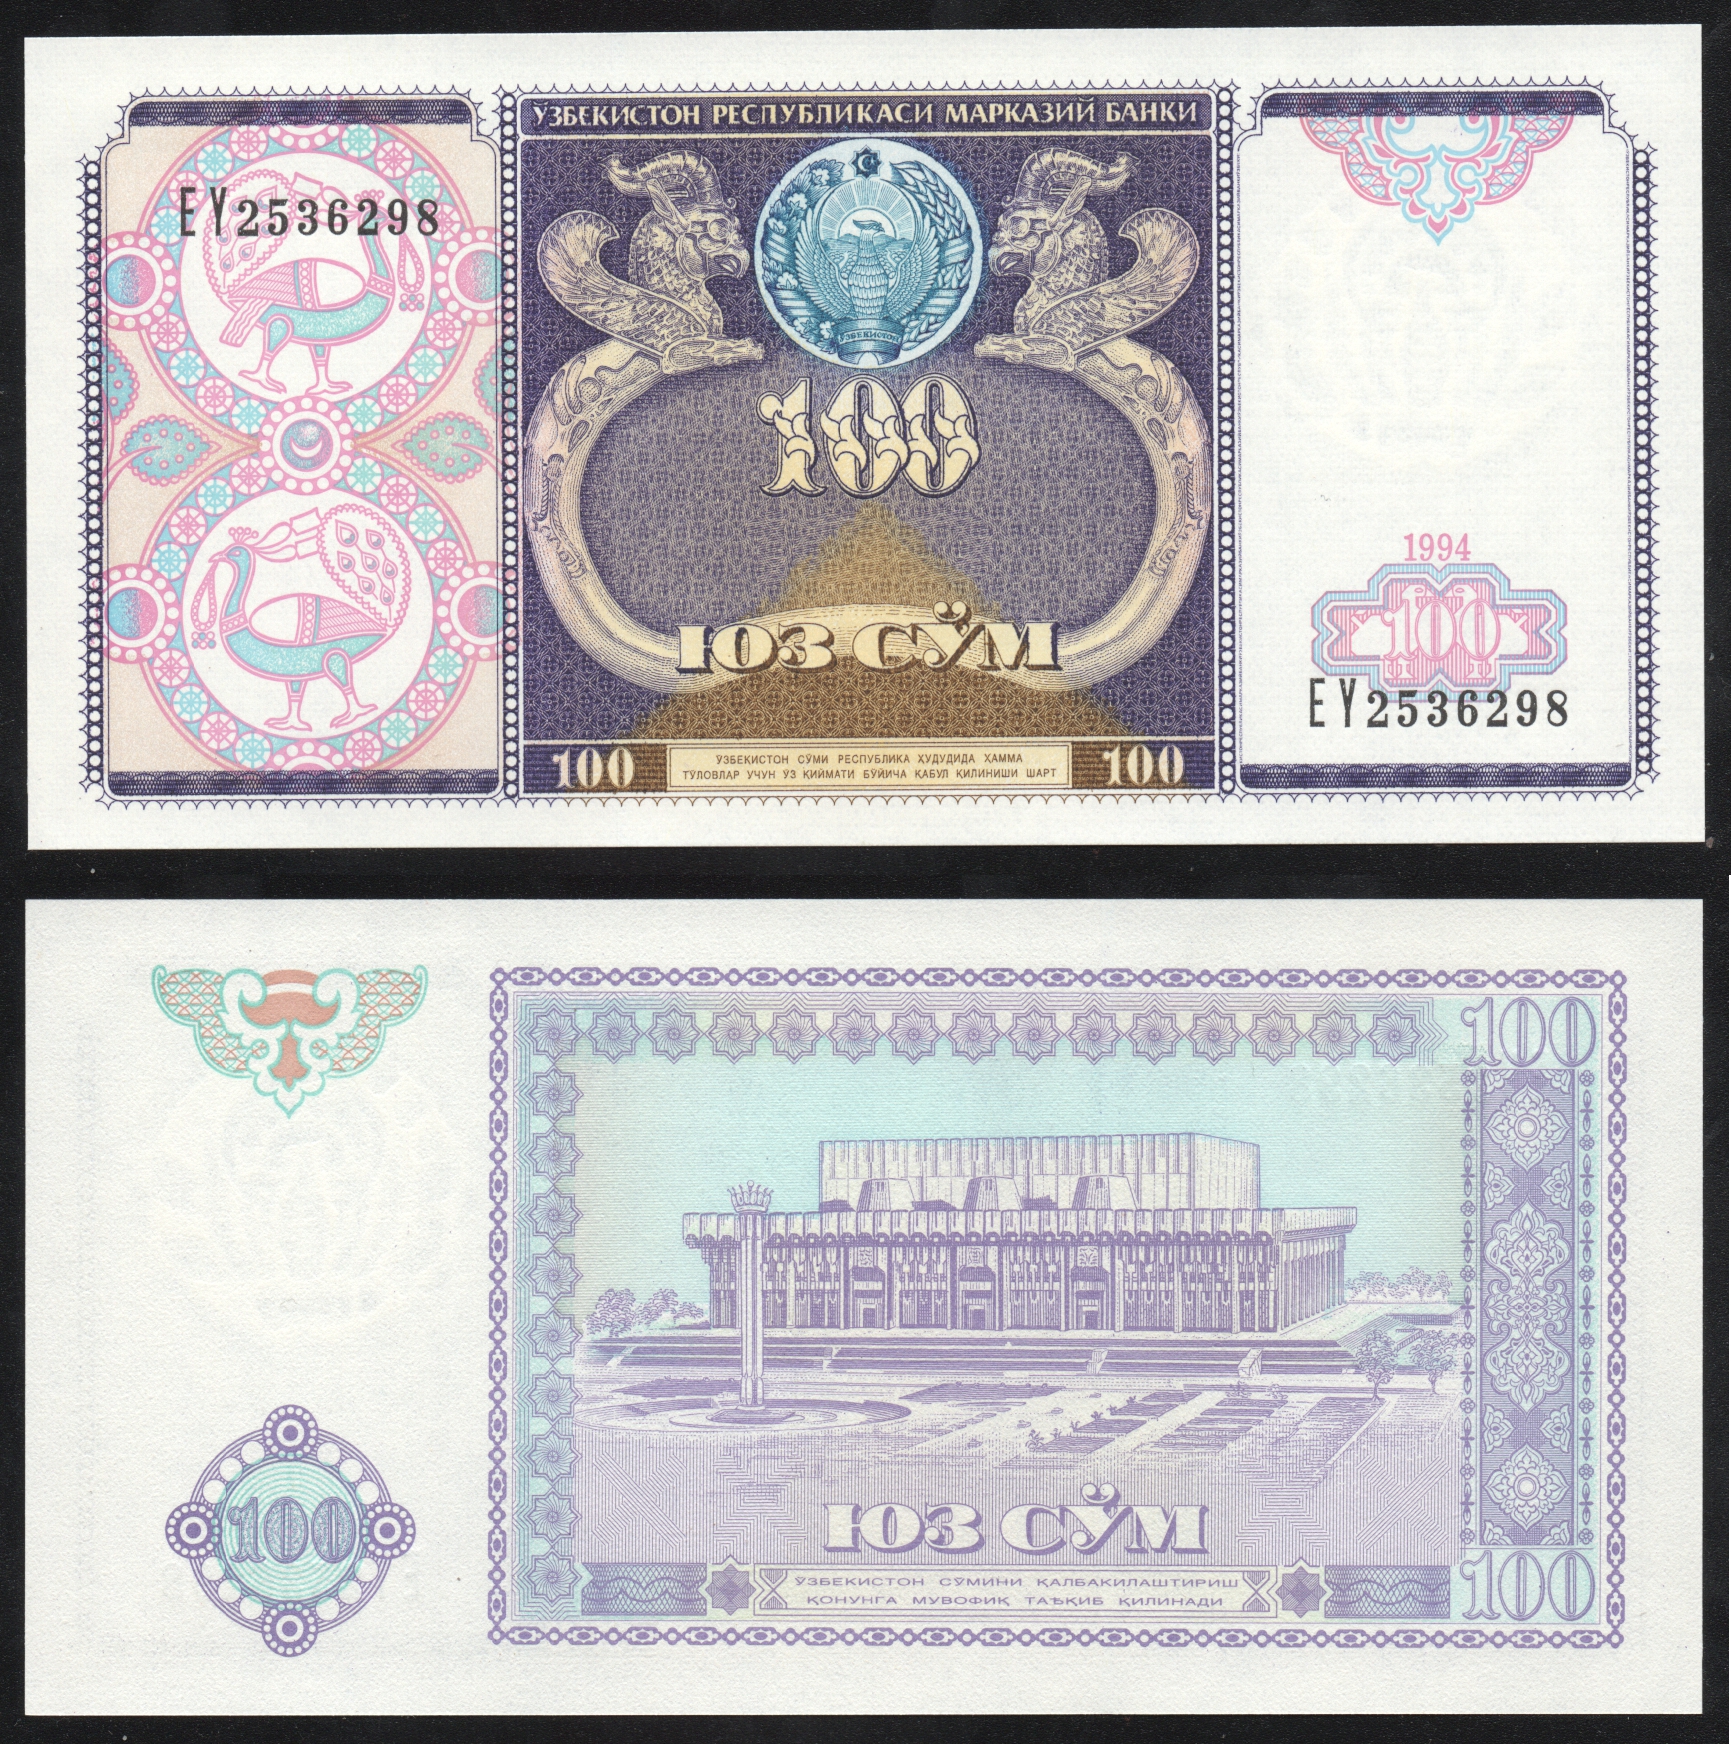 Узбекистан валюта сум